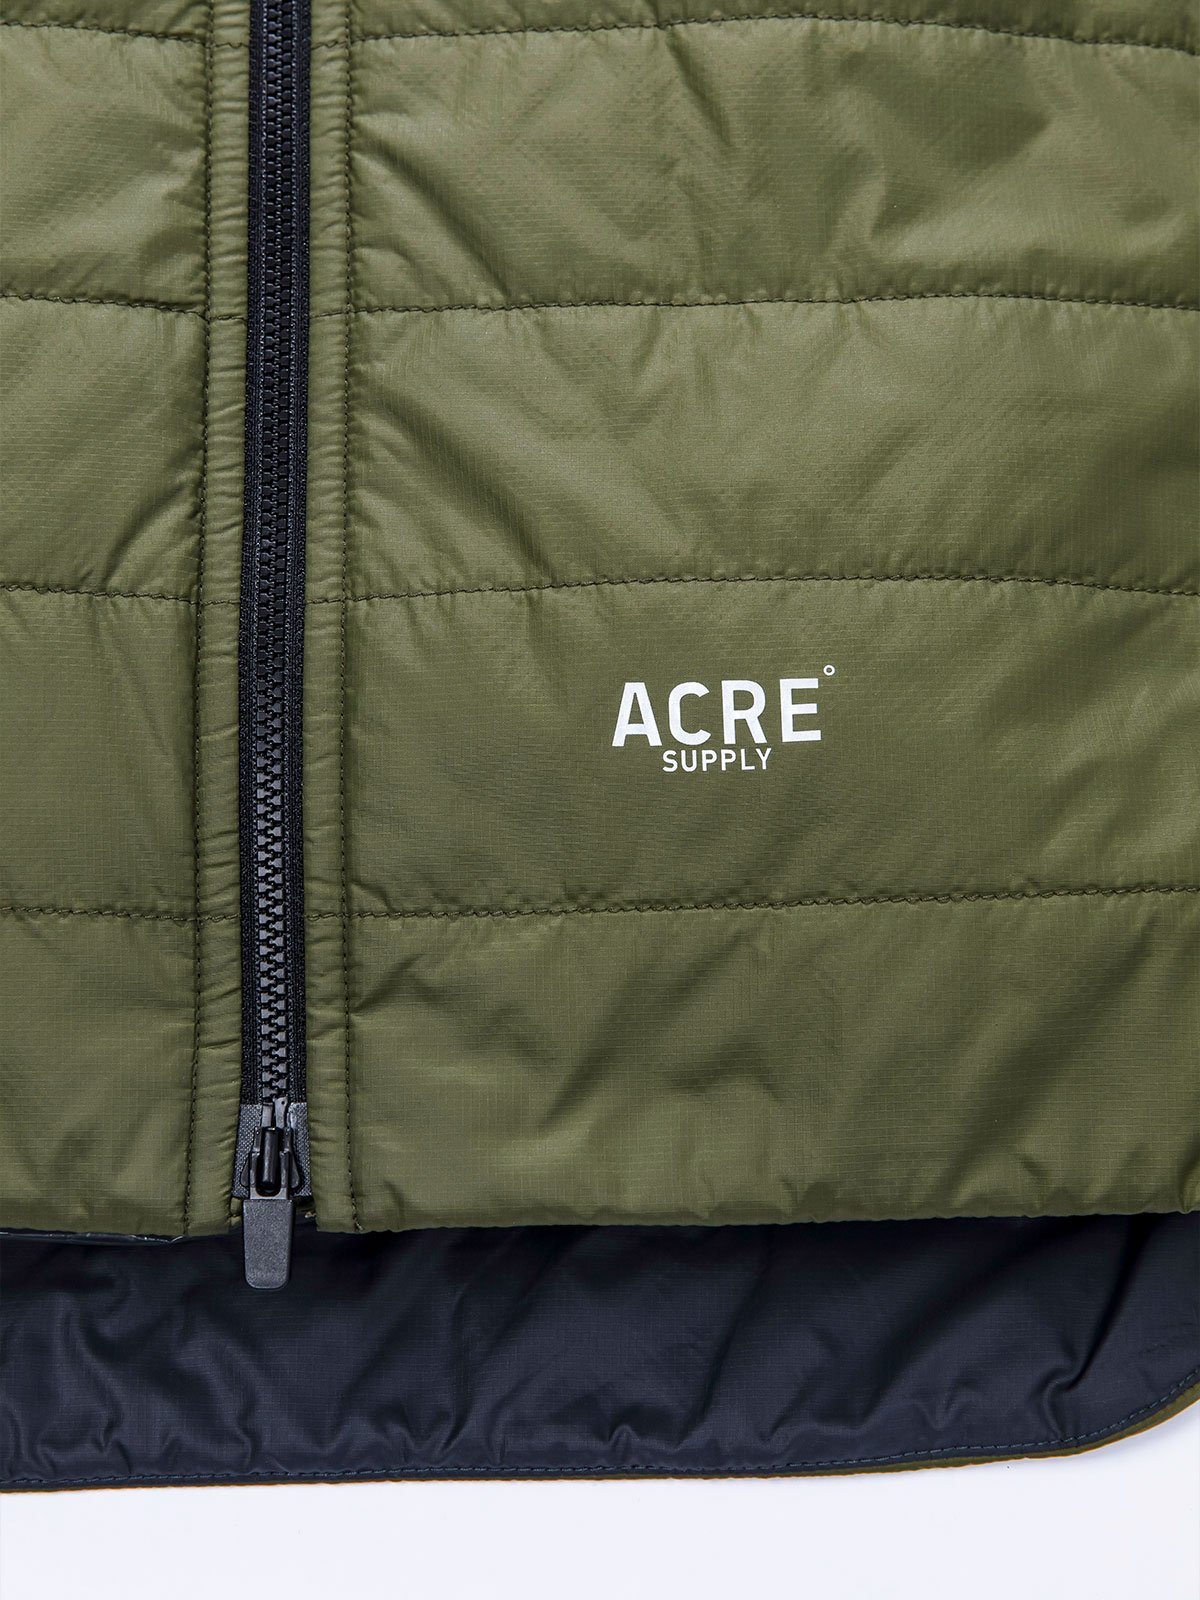 Acre Series Jacket by Mission Workshop - Weatherproof Bags & Technical Apparel - San Francisco & Los Angeles - Construit pour durer - Garanti pour toujours